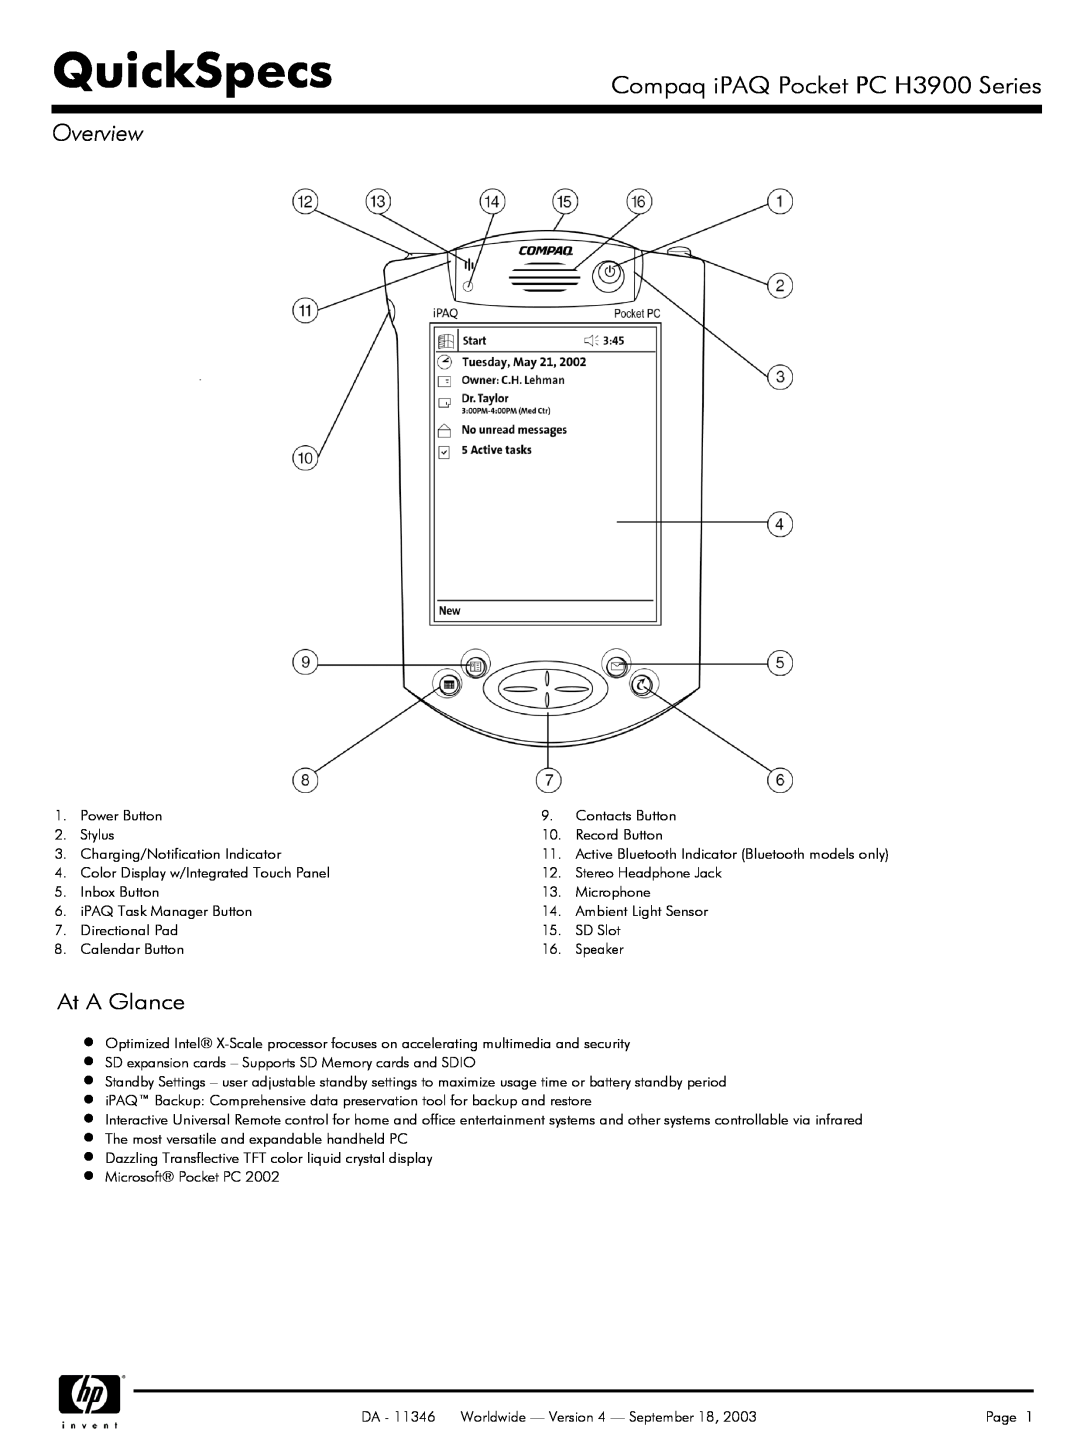 Compaq manual QuickSpecs, Compaq iPAQ Pocket PC H3900 Series, Overview, At A Glance 